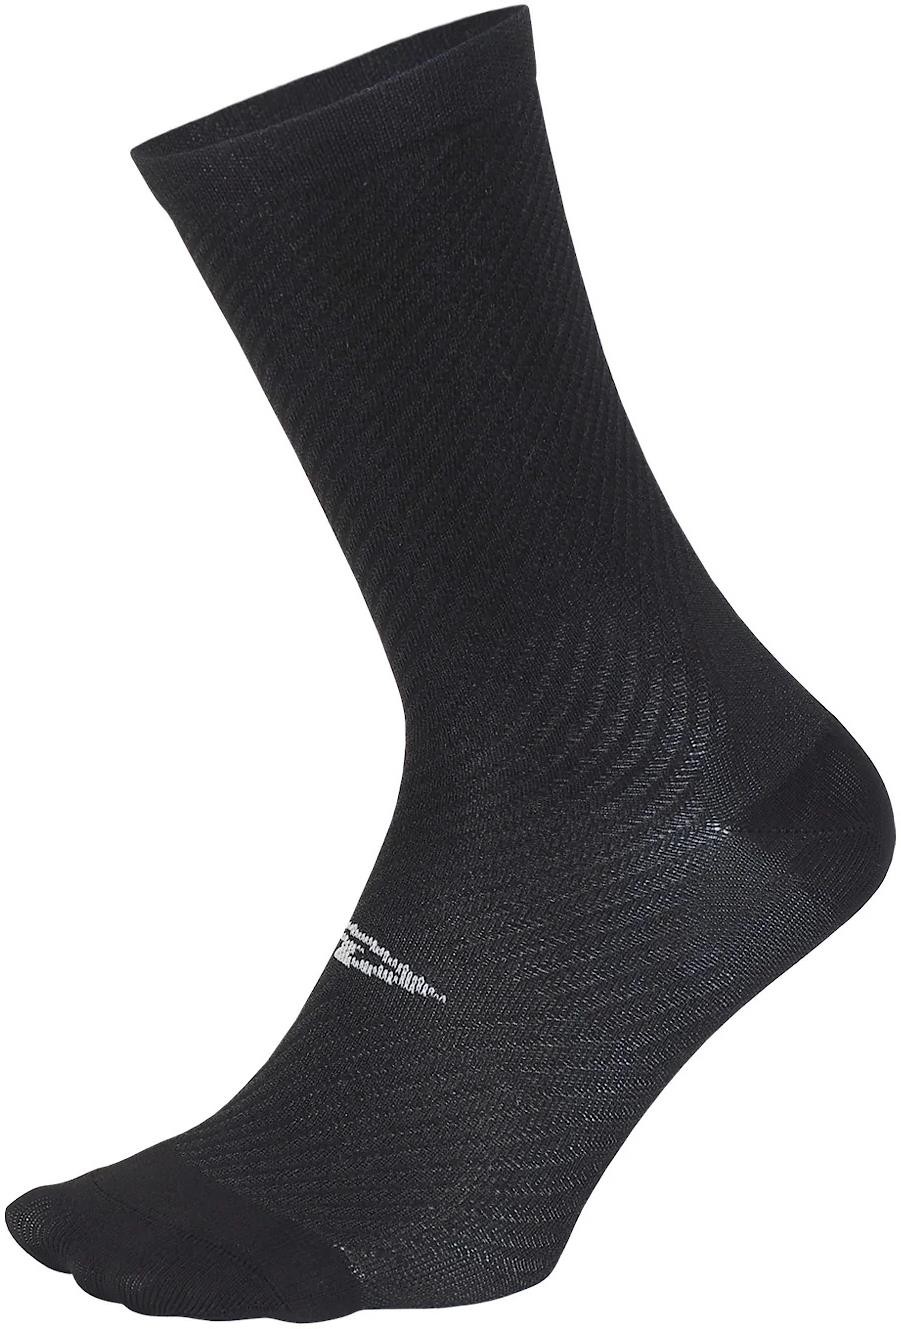 Evo Carbon Socks image 0